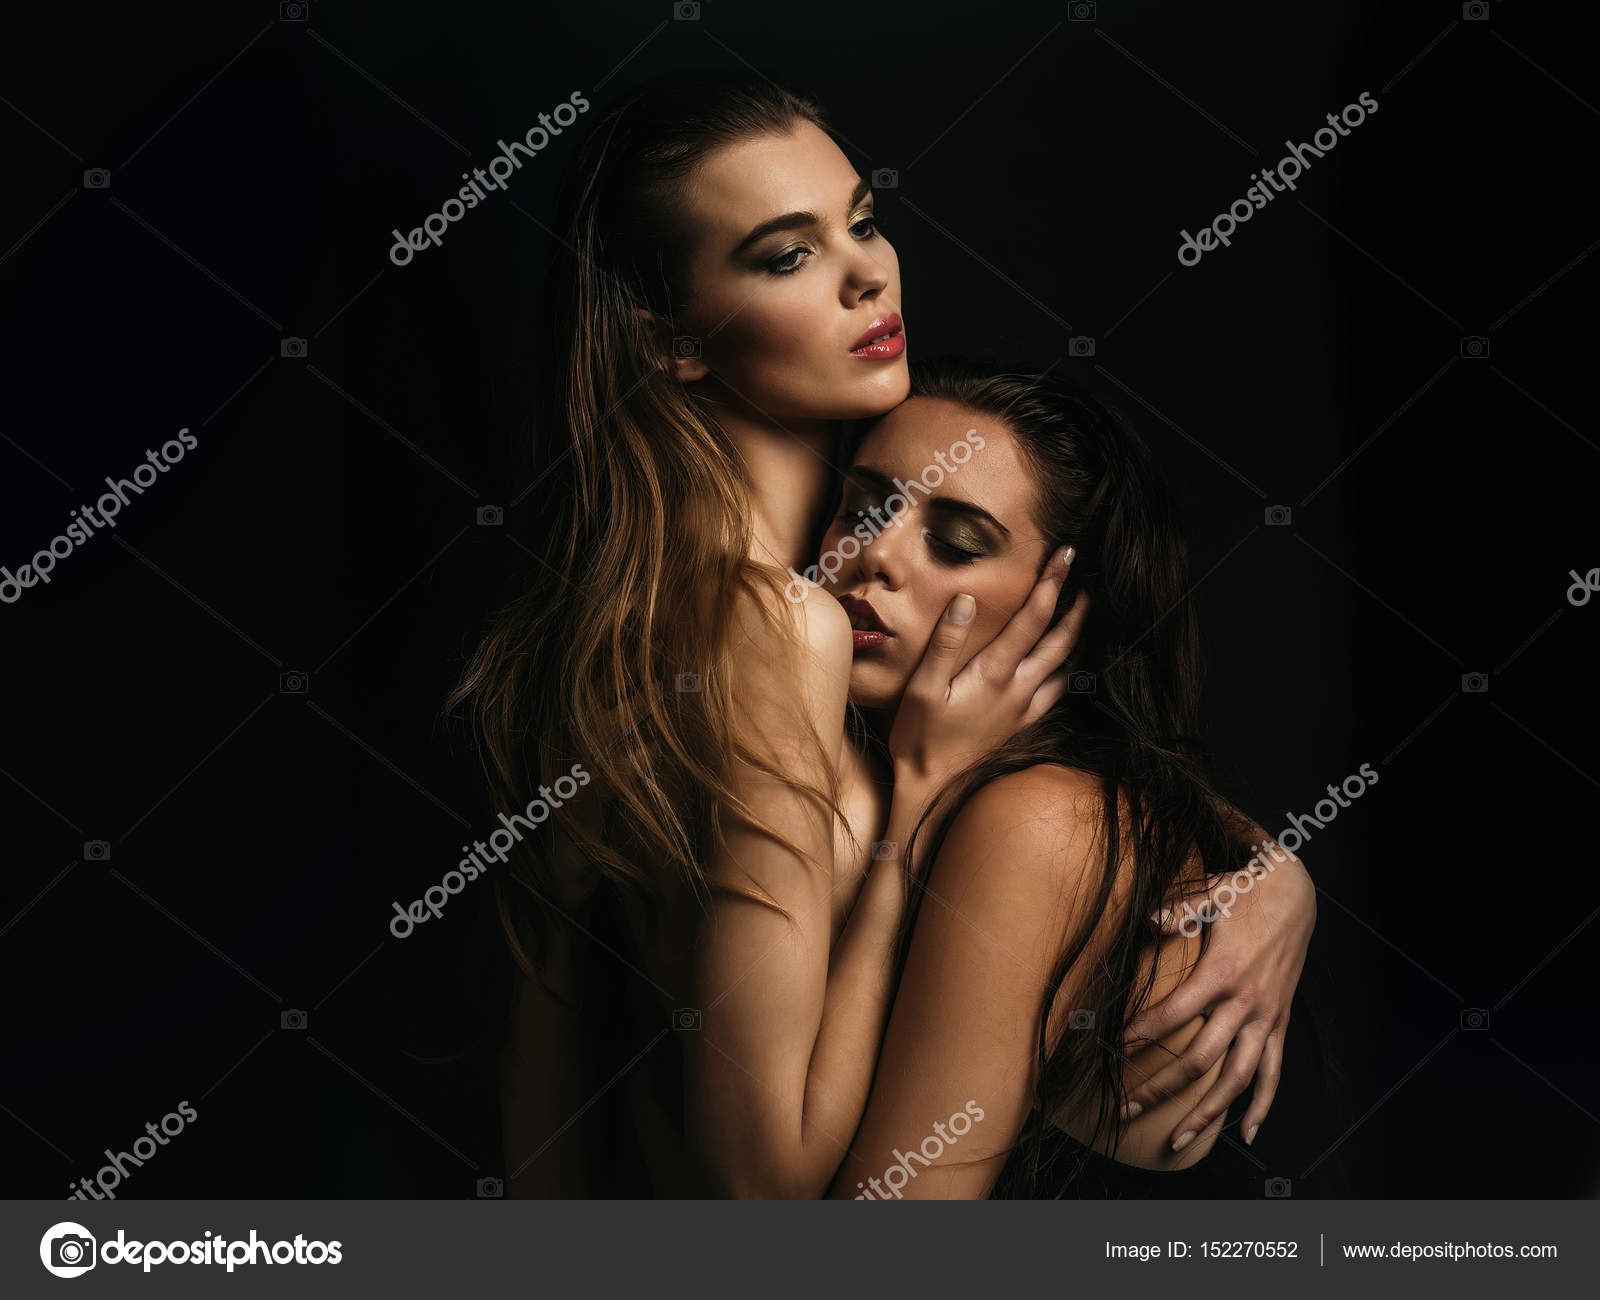 λεσβιακό σεξ εικόνα com